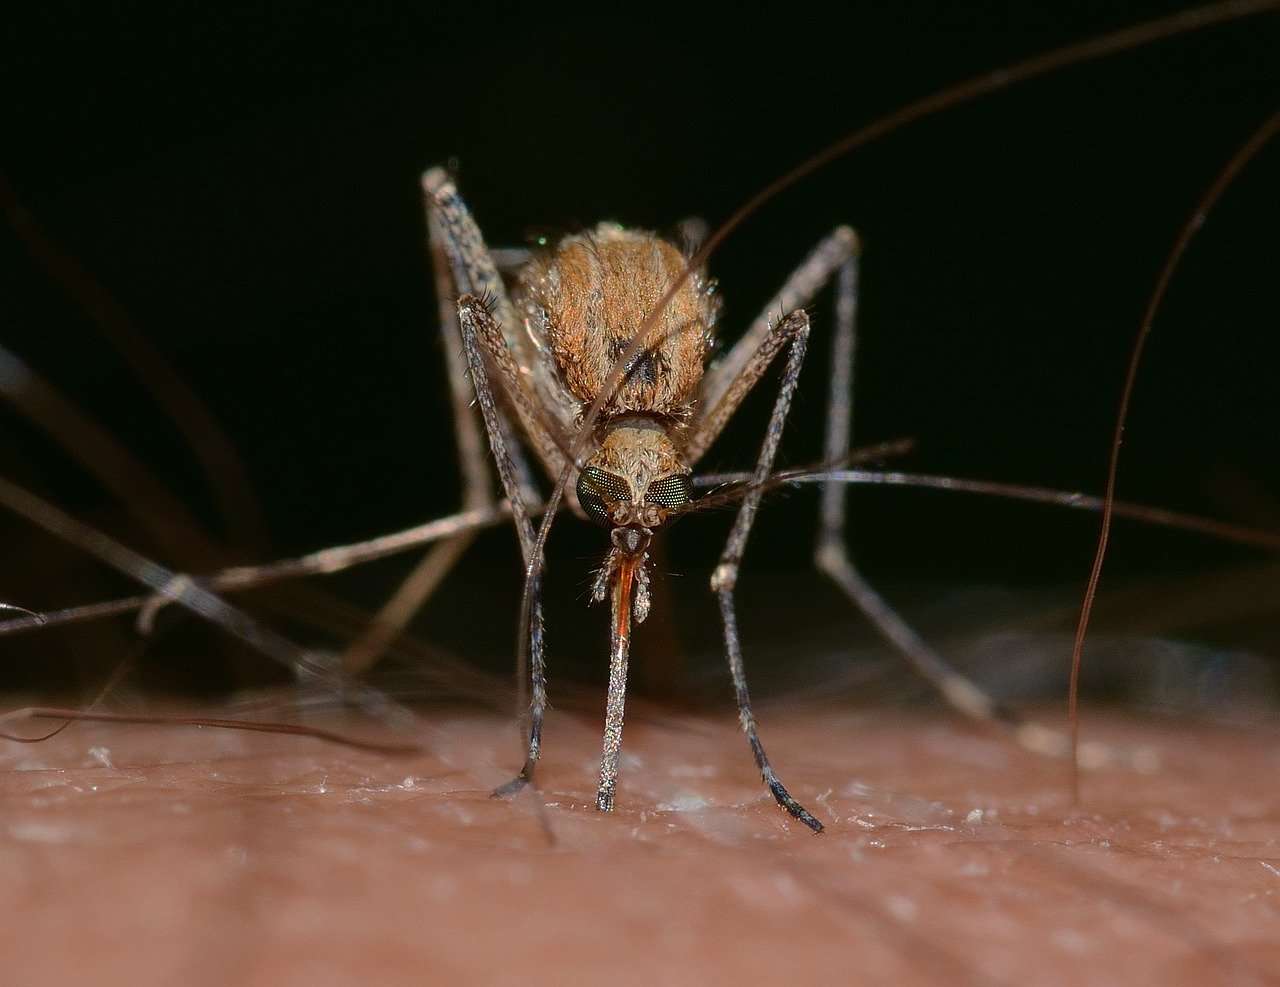 Pět miliard infikovaných komárů bakteriemi ročně vyprodukuje gigantická továrna na komáry v Brazílii